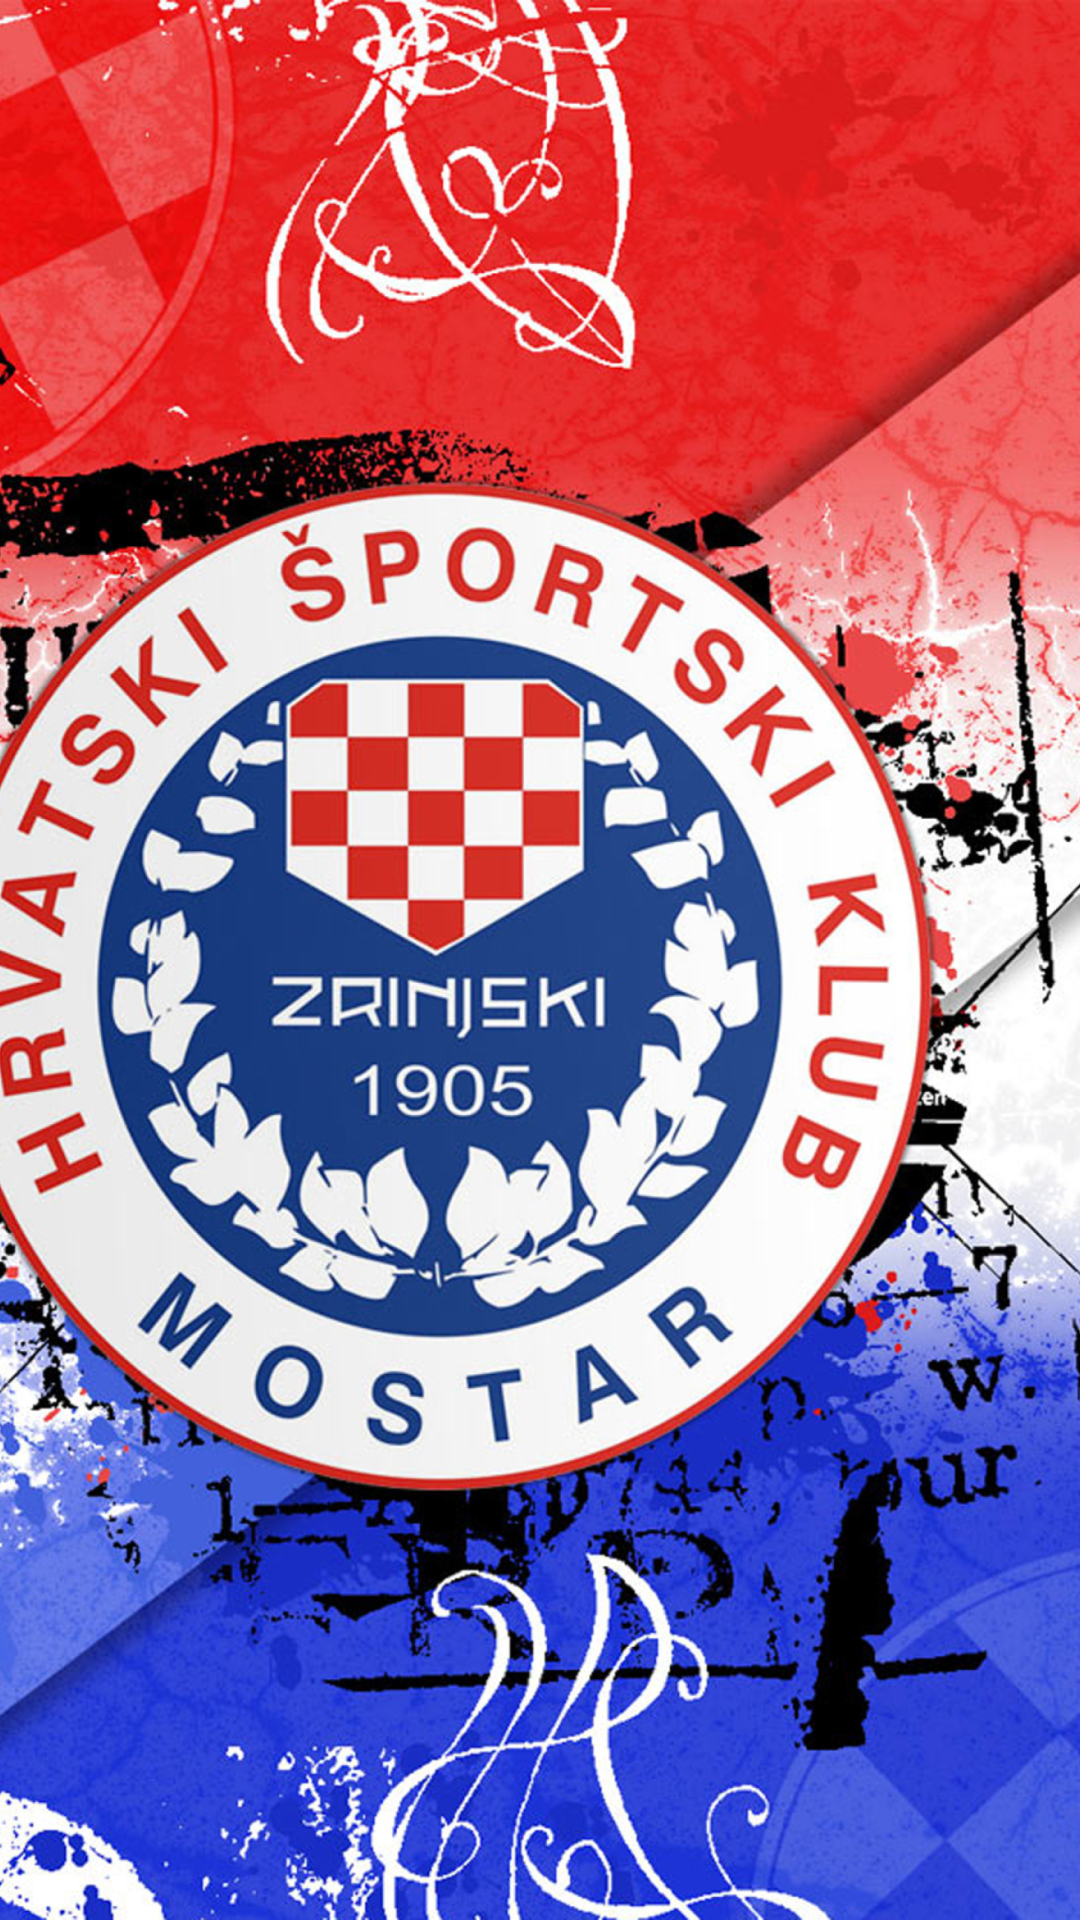 HŠK Zrinjski Mostar wallpaper 1080x1920